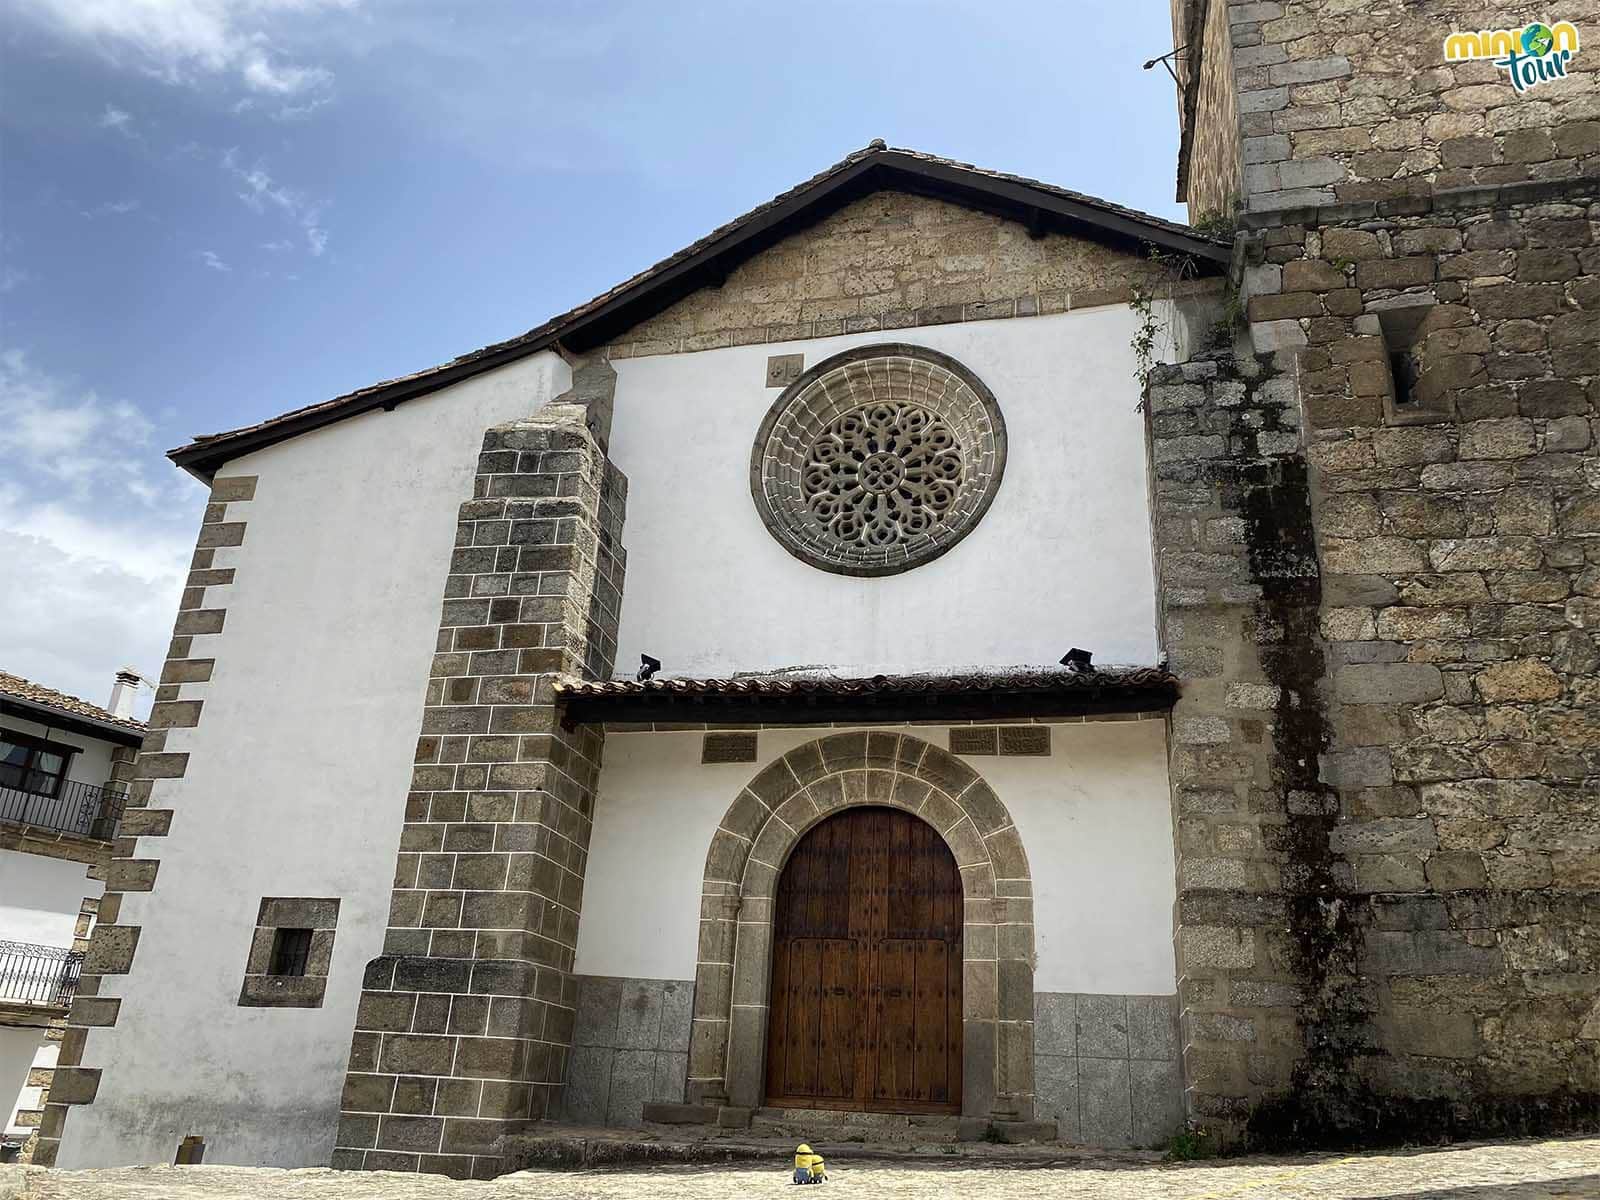 El rosetón de la iglesia de Candelario es cuqui